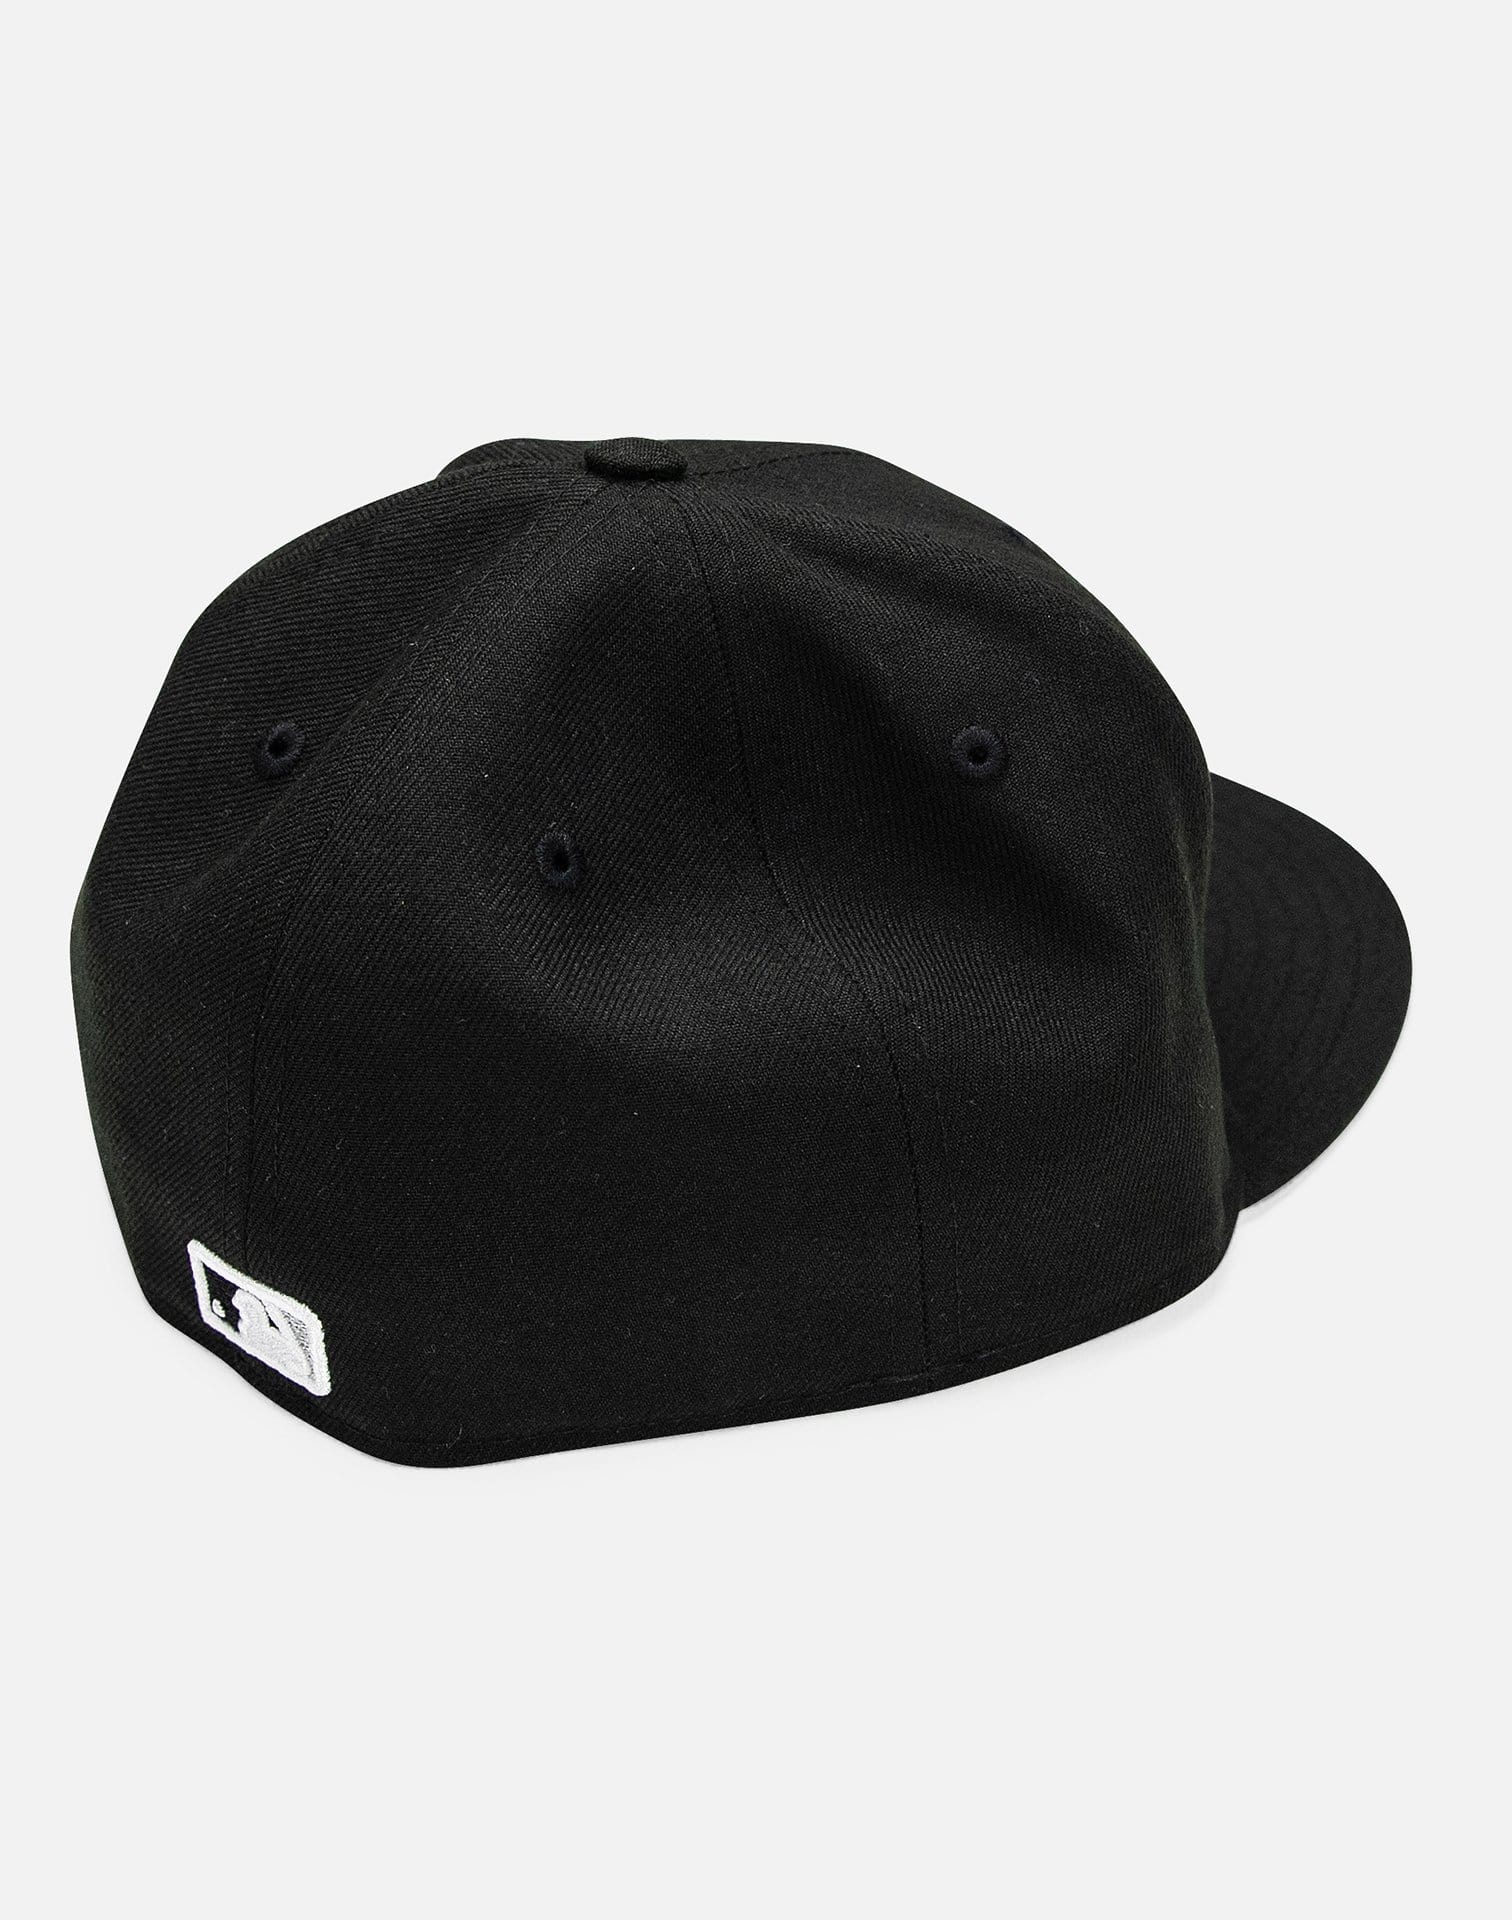 New Era Cap Australia  New Era Hats & Apparel